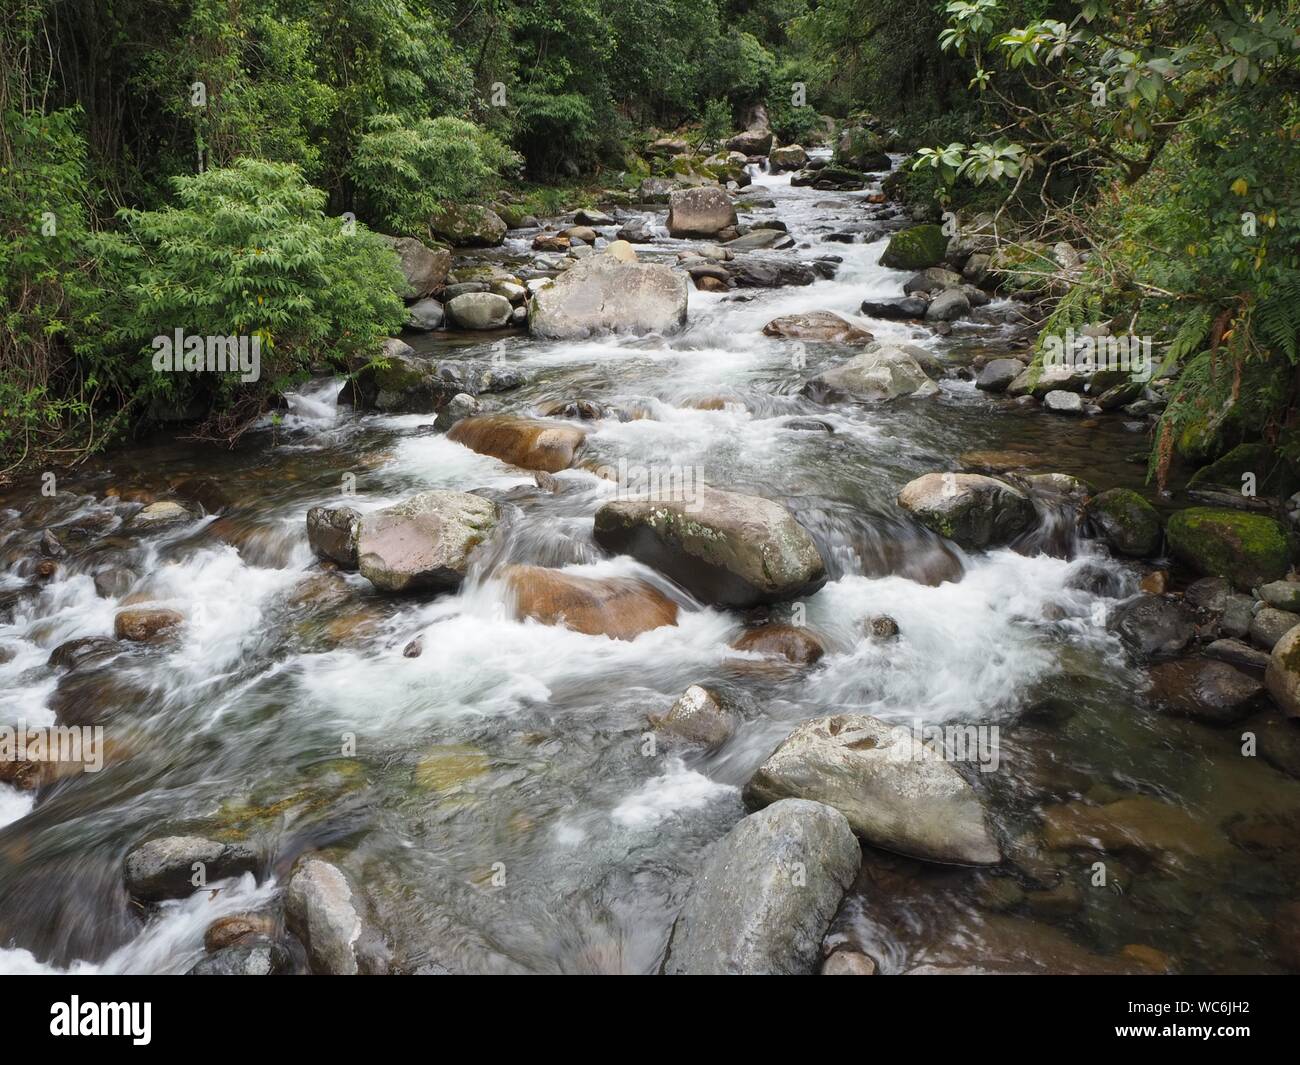 Forêt tropicale et jungle ou ruisseau qui coule rapidement avec l'eau blanche dans la forêt près de Boquete au Panama. Près des chutes d'eau de Wendys. Banque D'Images